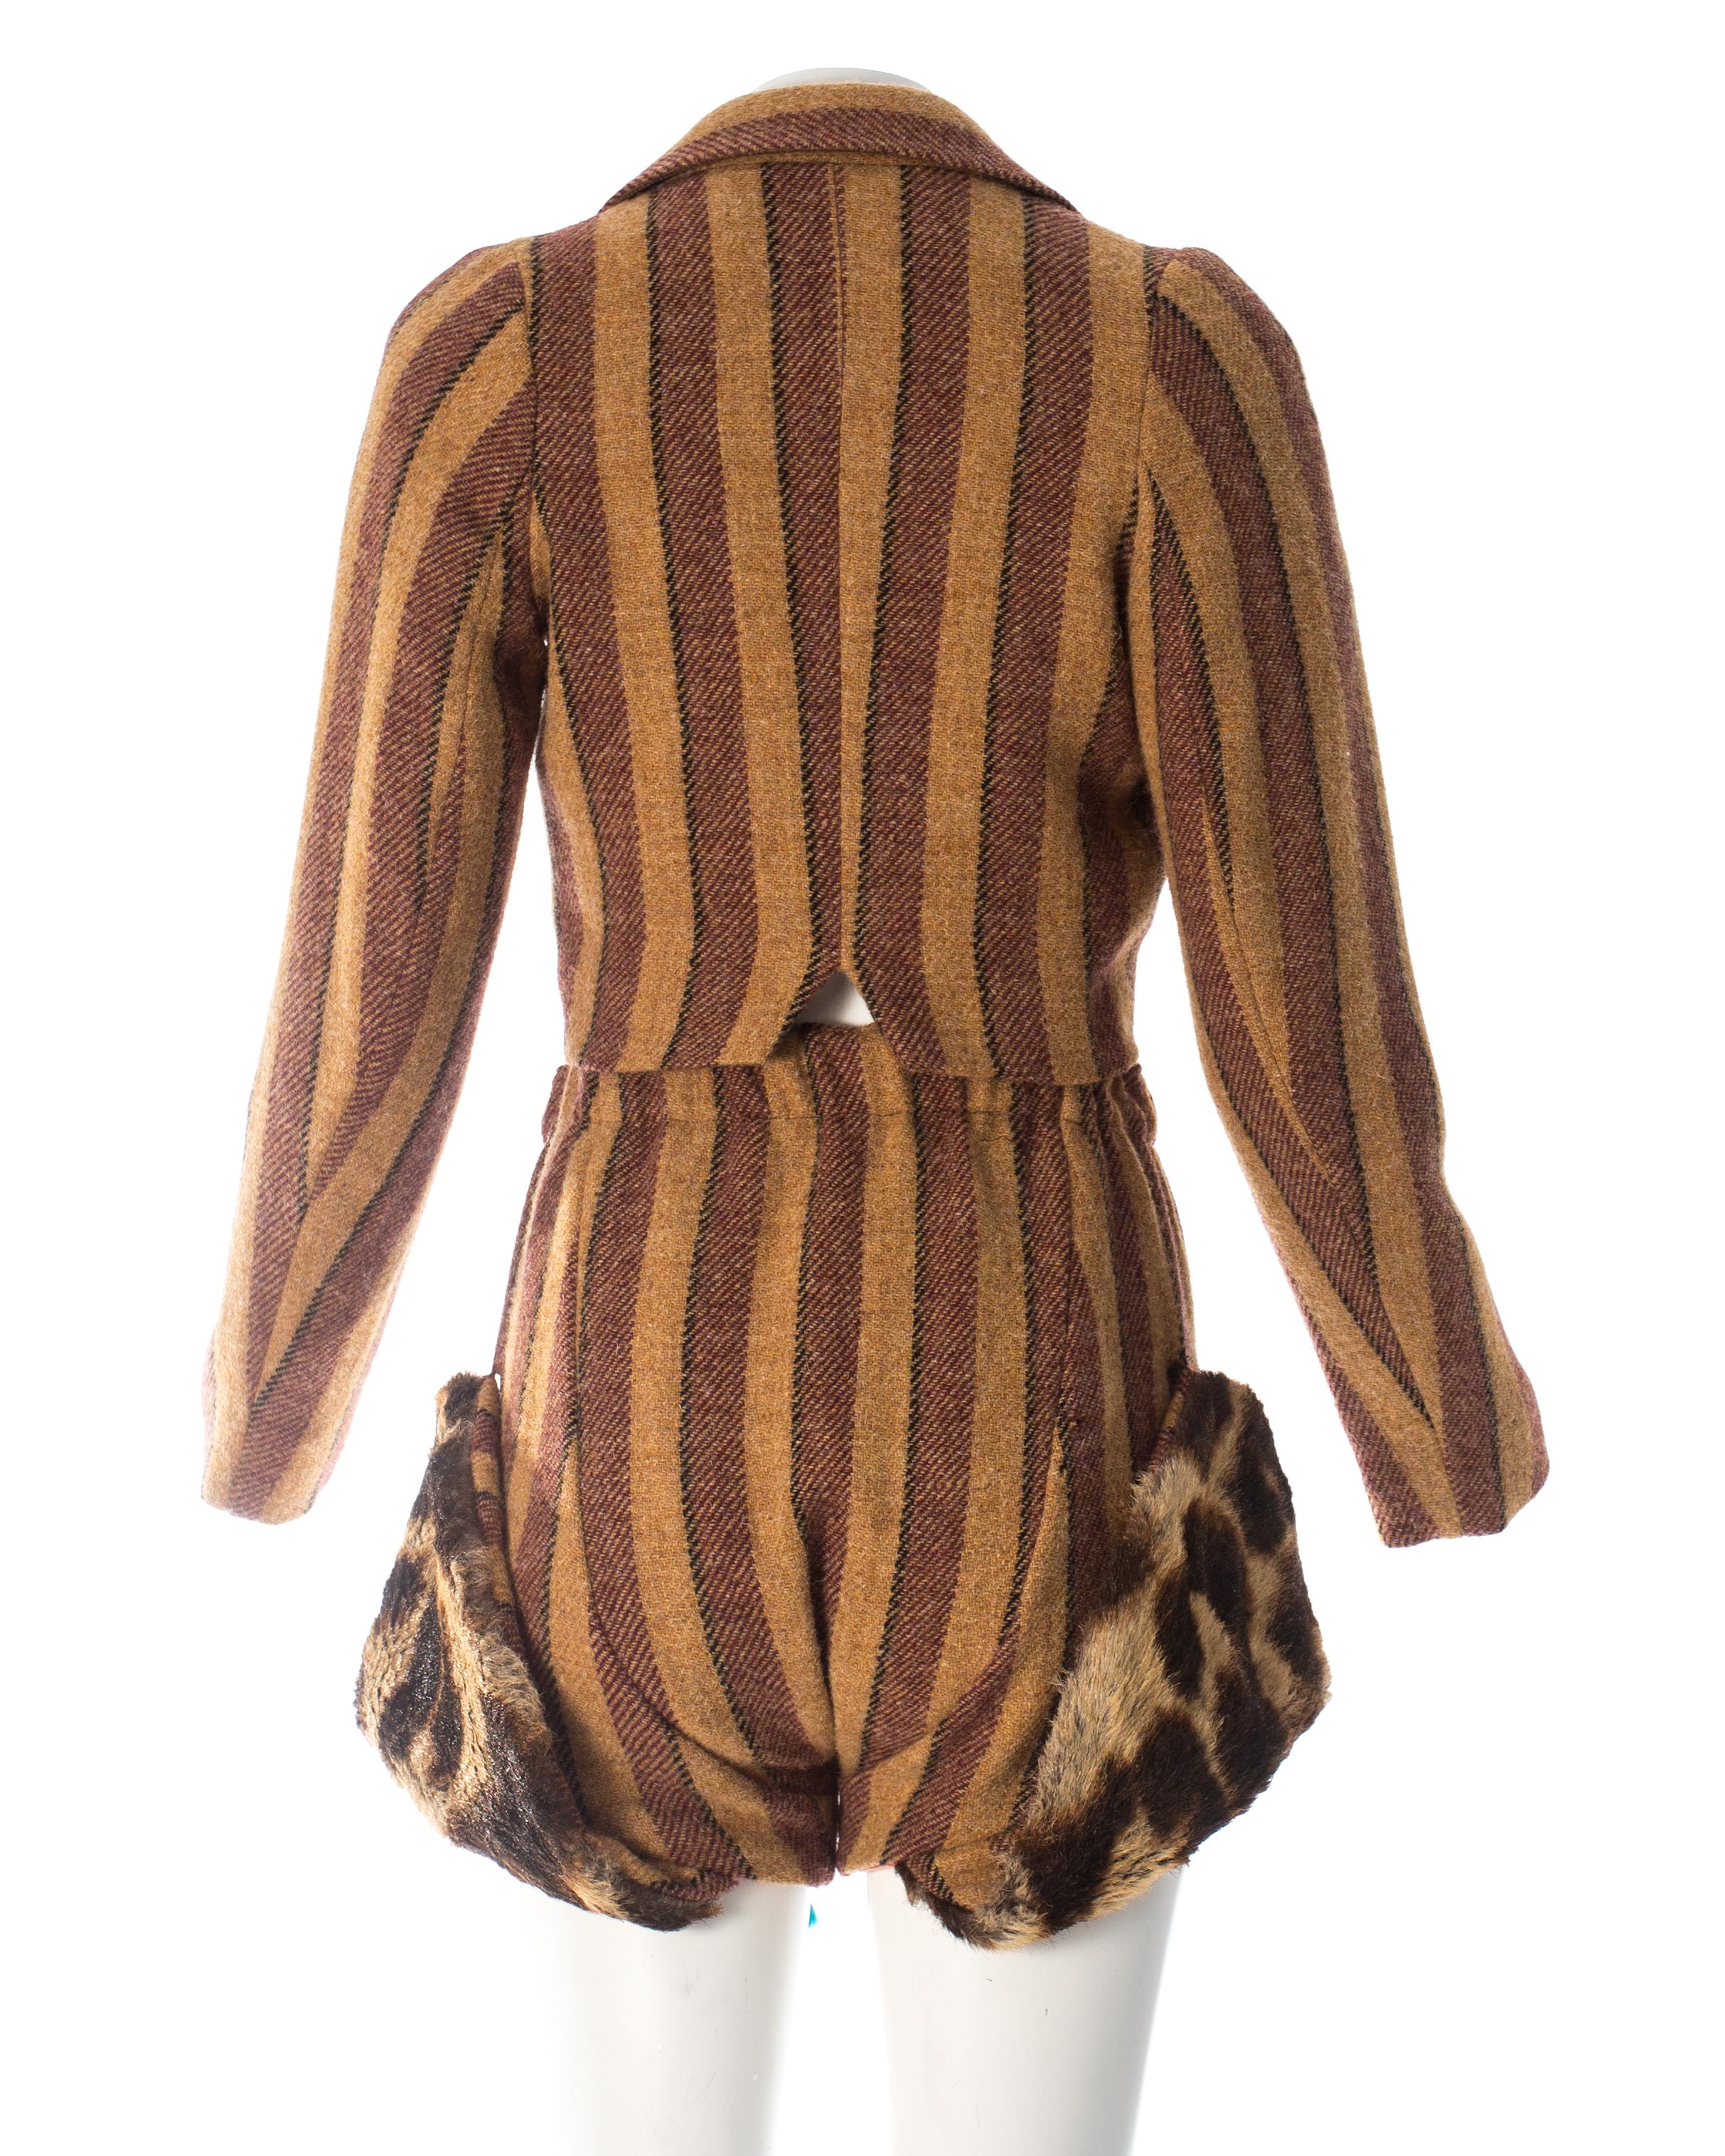 Vivivnne Westwood striped herringbone tweed short suit, fw 1990 3